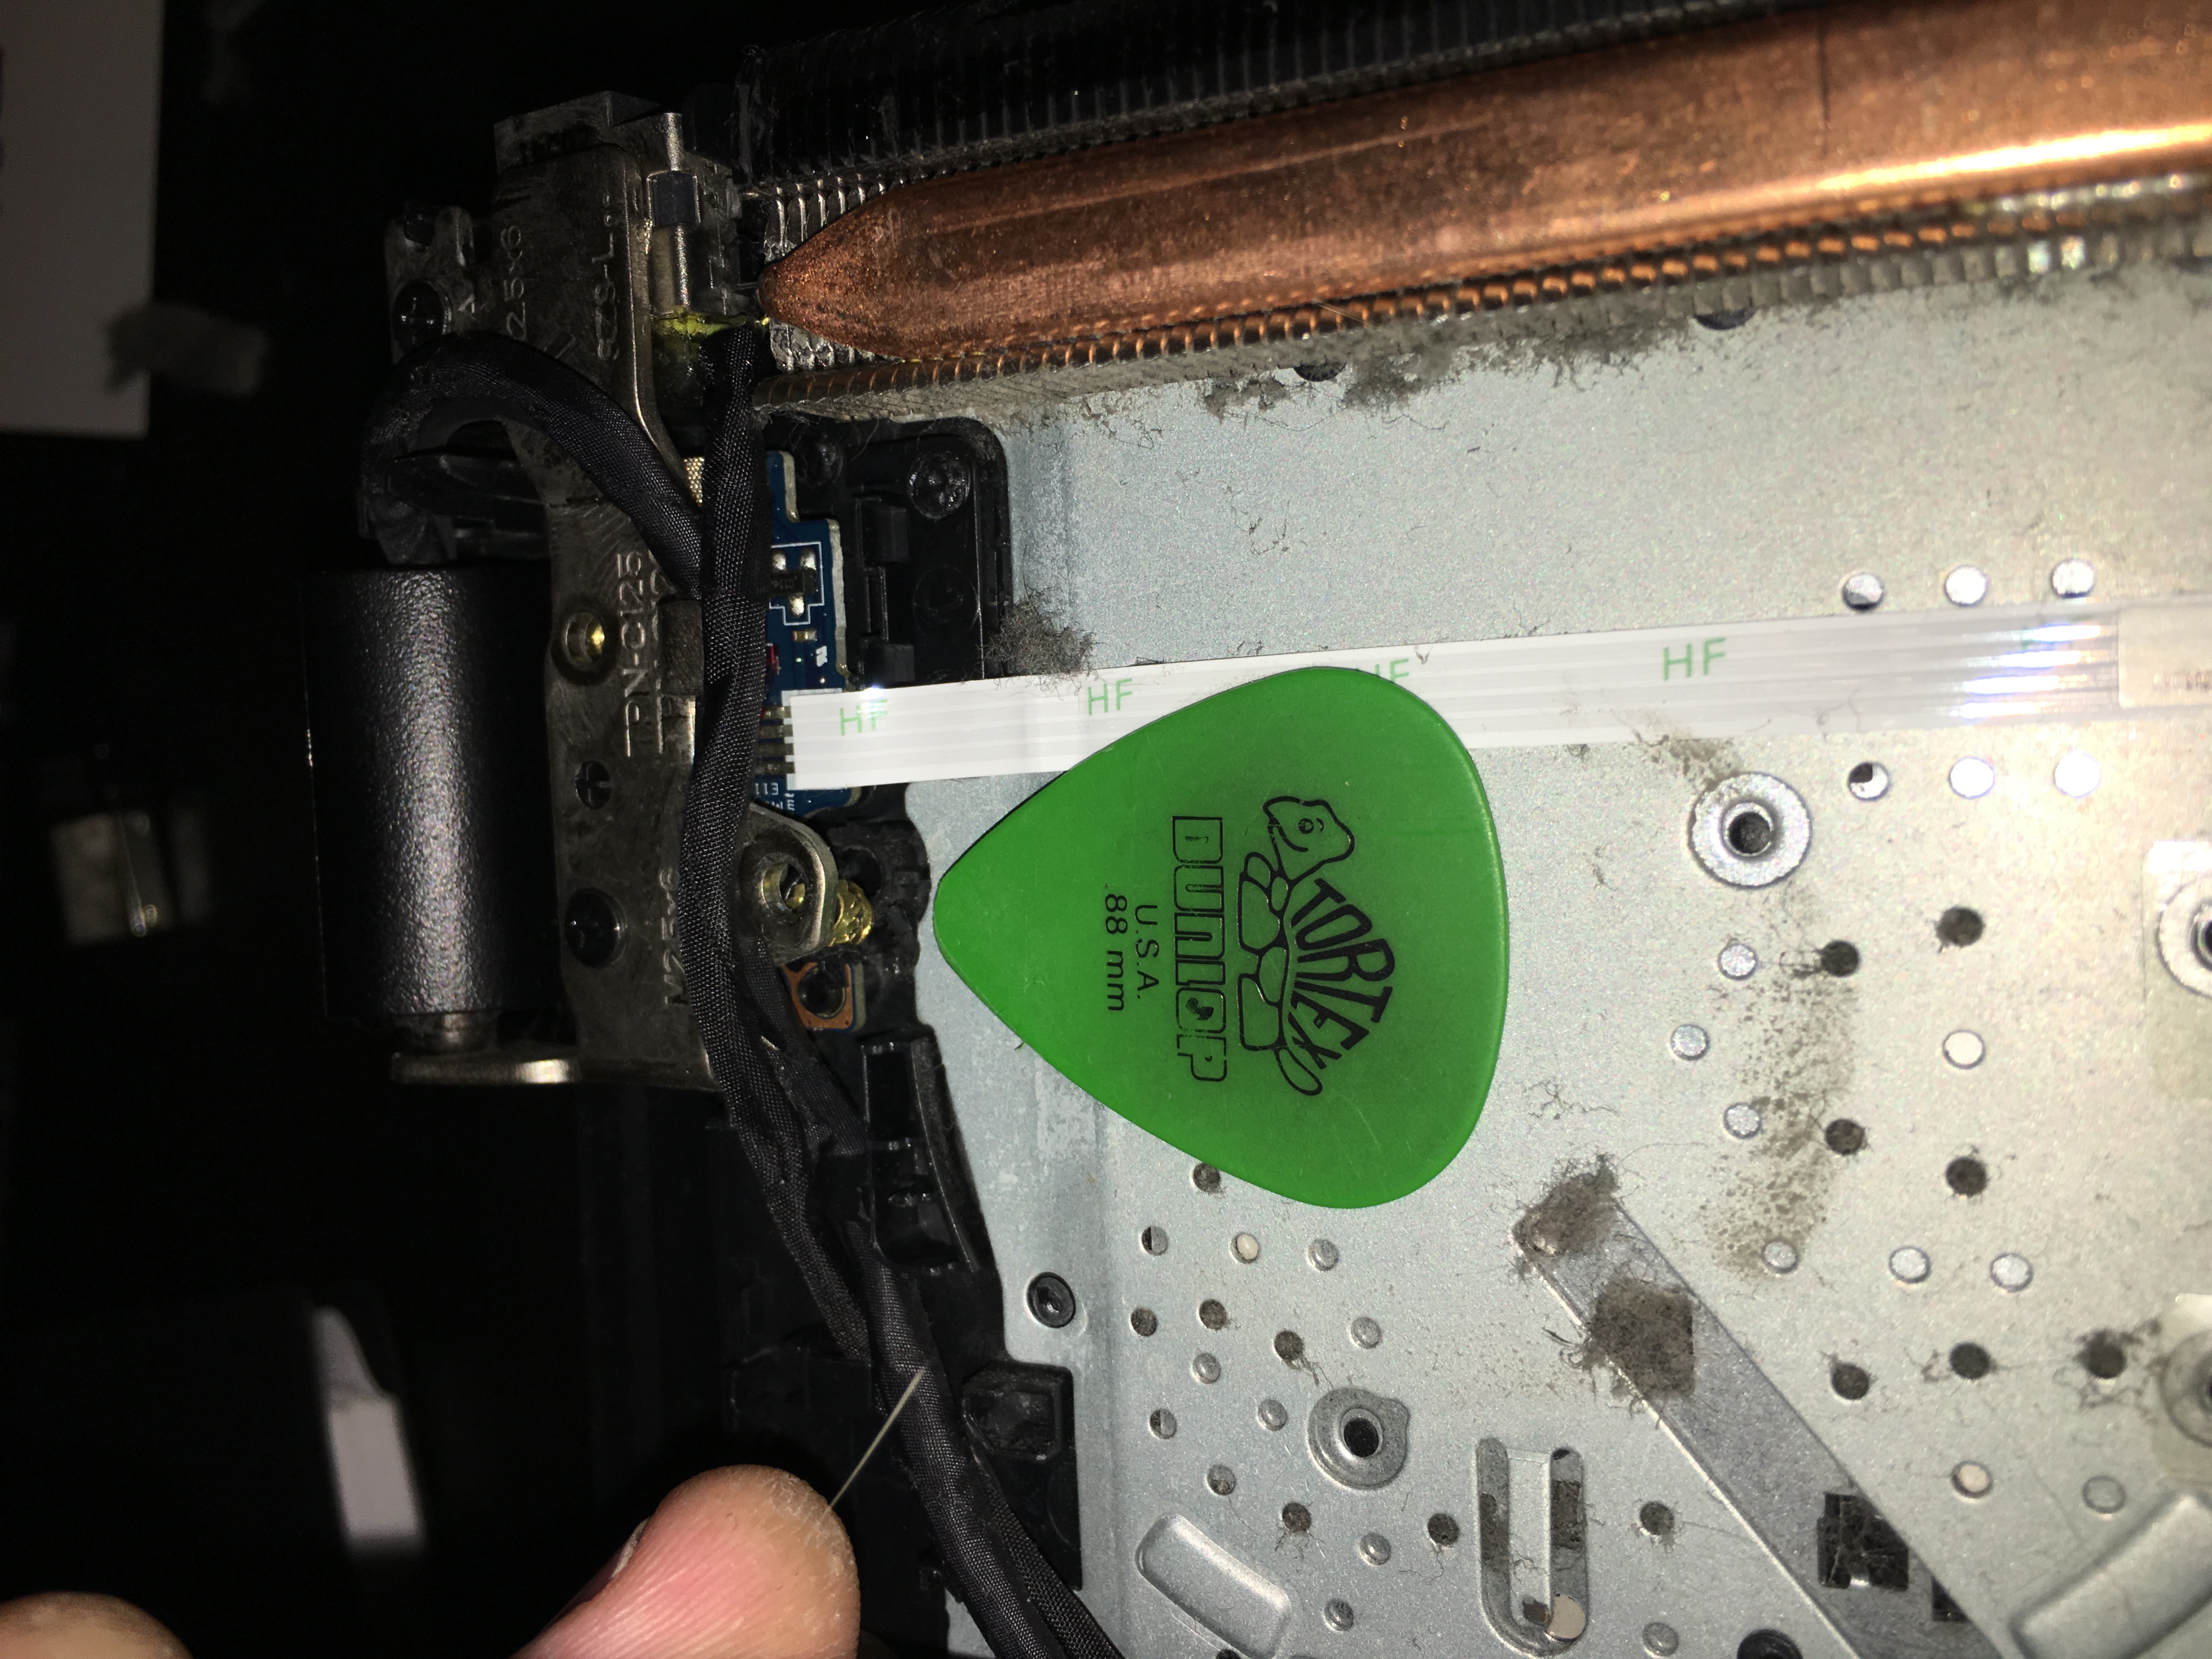 Broken pieces inside near fan - HP Support Community - 6995279